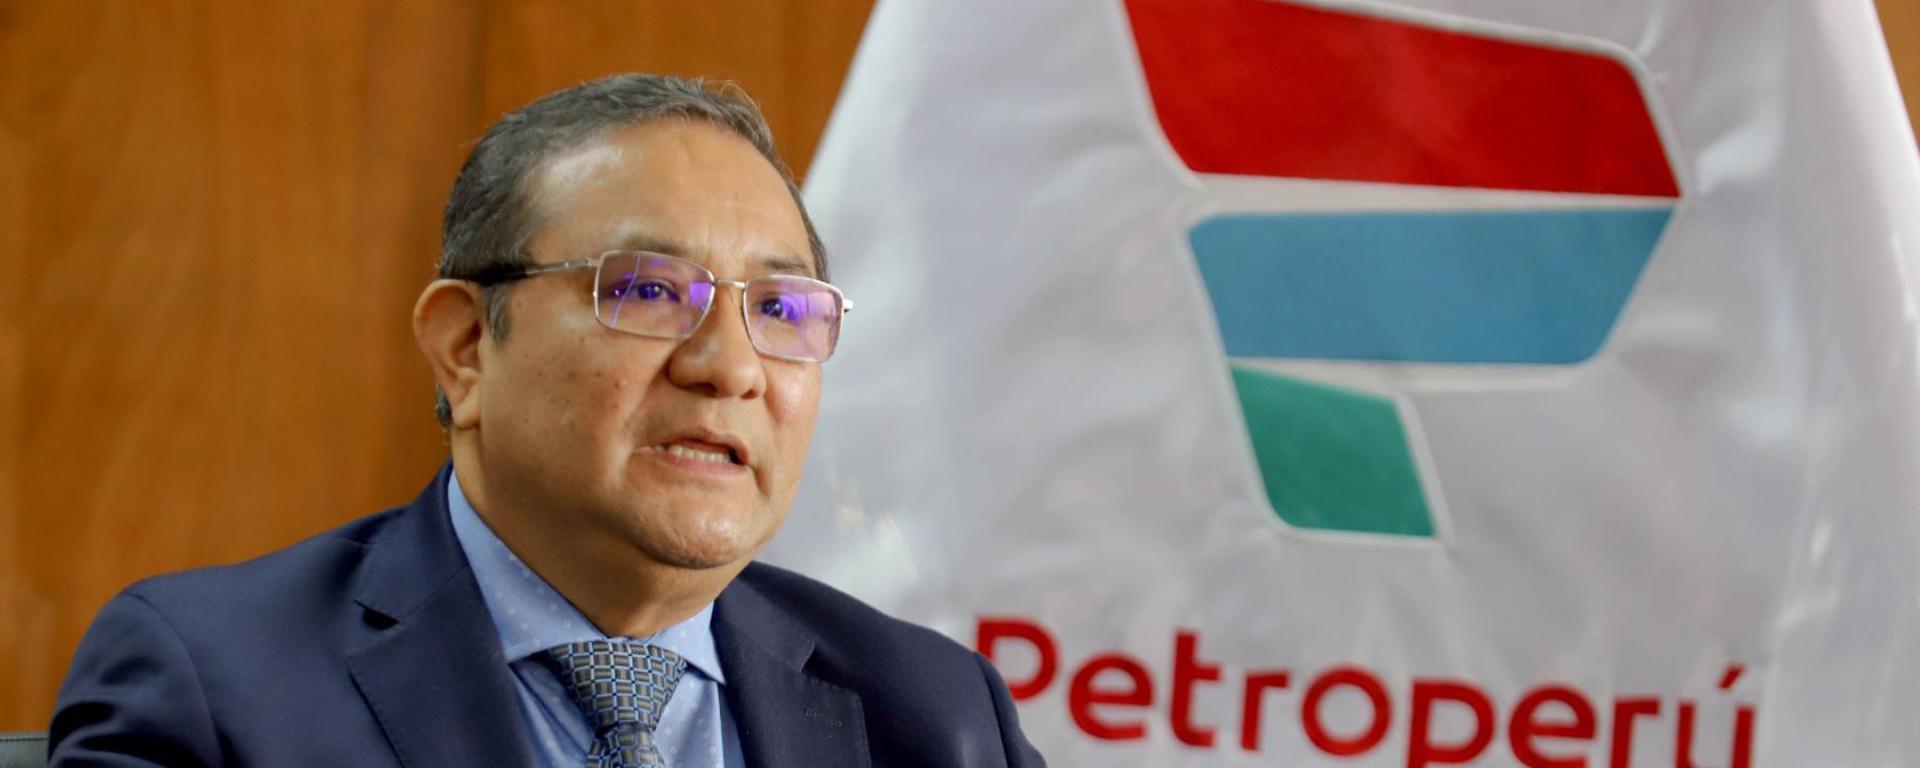 Nuevo rescate de Petro-Perú ascendería a no menos de US$3.000 millones | INFORME